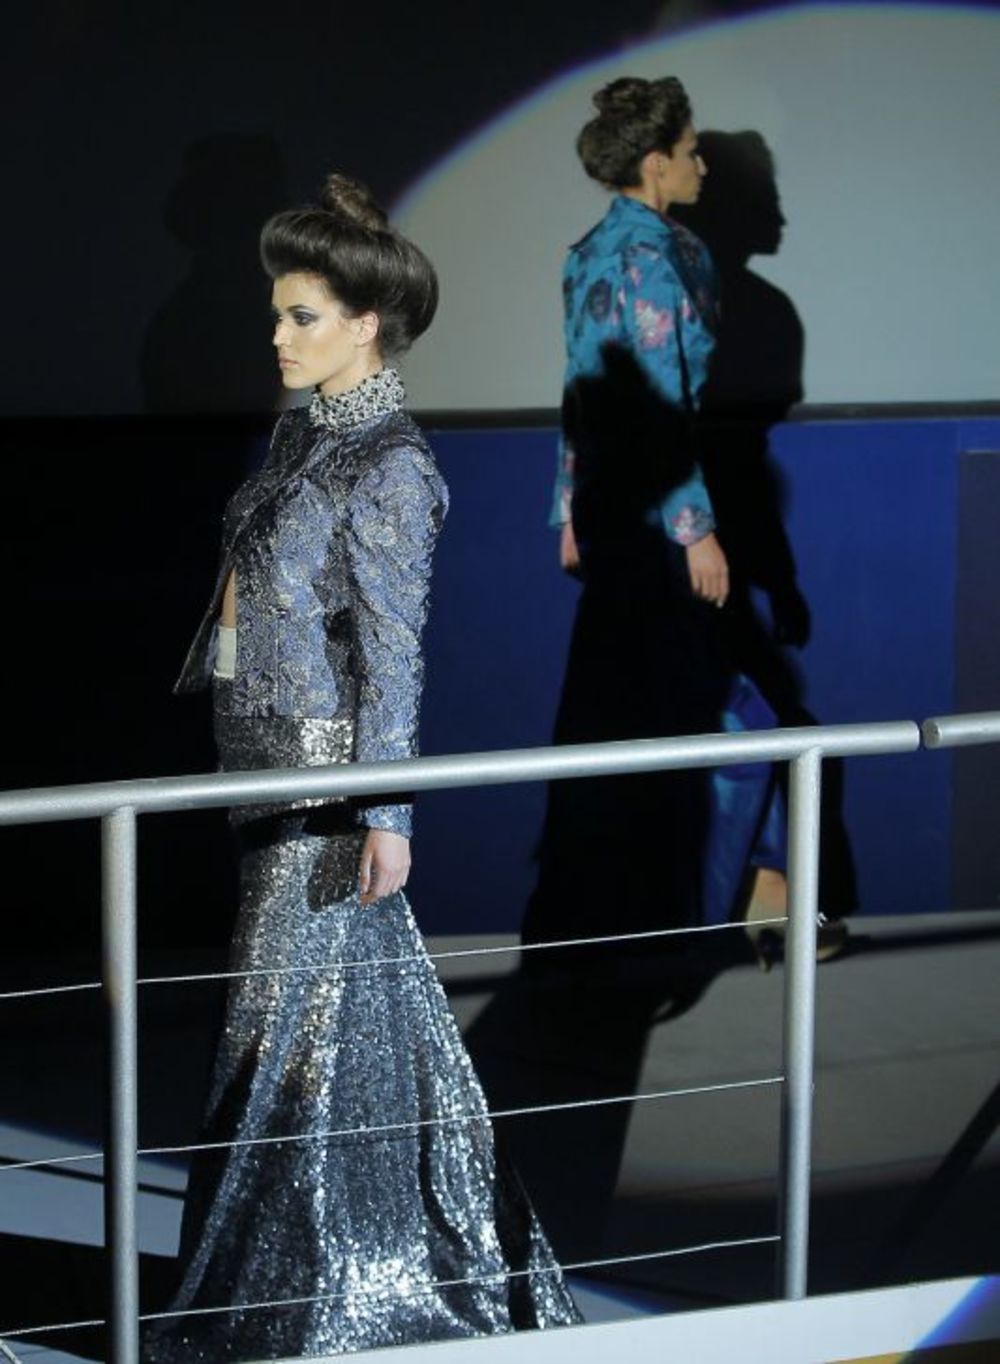 Dizajner Nenad Sekirarski predstavio je haljine ispirisane modom sa početka 20. veka u okviru manifestacije Maybelline Fashion Selection. Umesto piste, manekenke su hodale po palubi, jer je kolekcija inspirisana pričom o Titaniku, brodu koji je potonuo u Pacif